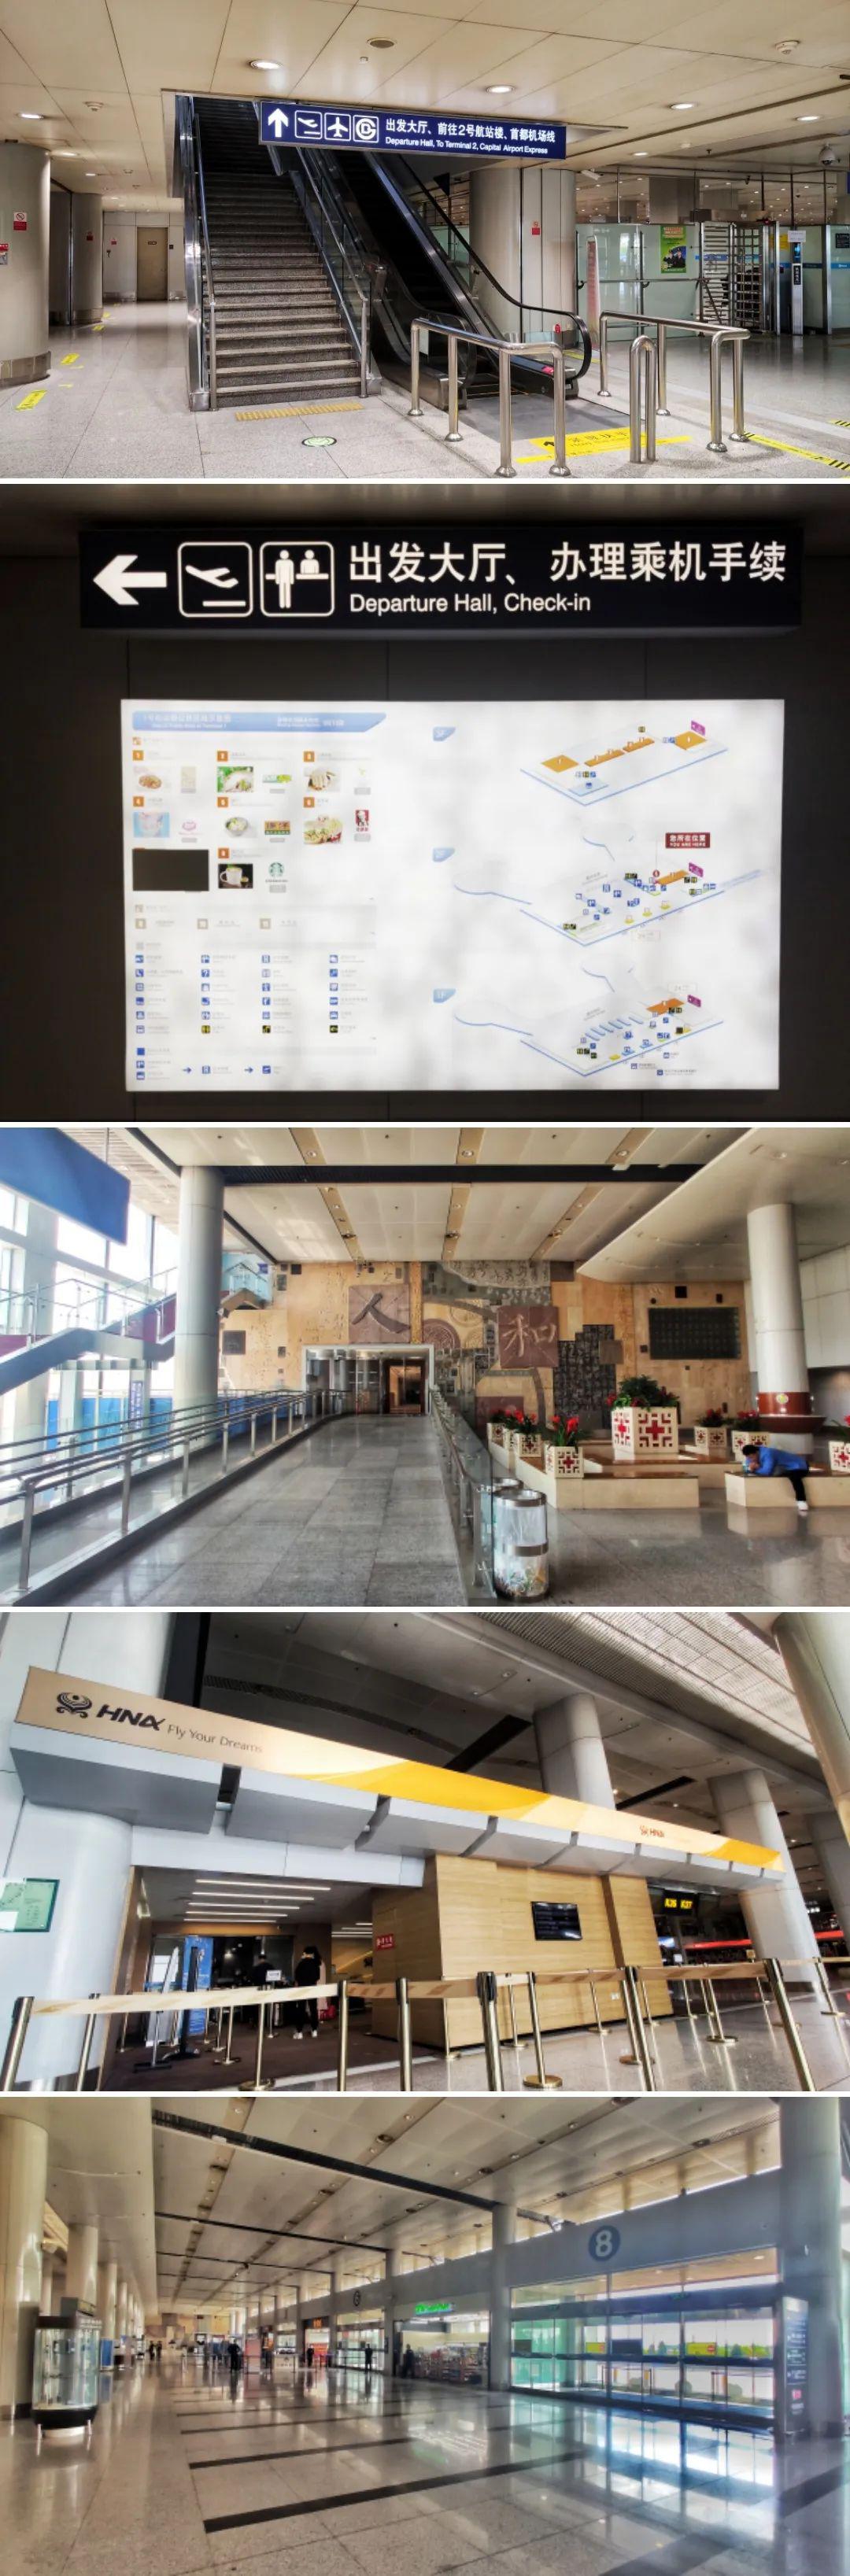 首都机场 北京国际机场模型-公共设施模型库-3ds Max(.max)模型下载-cg模型网